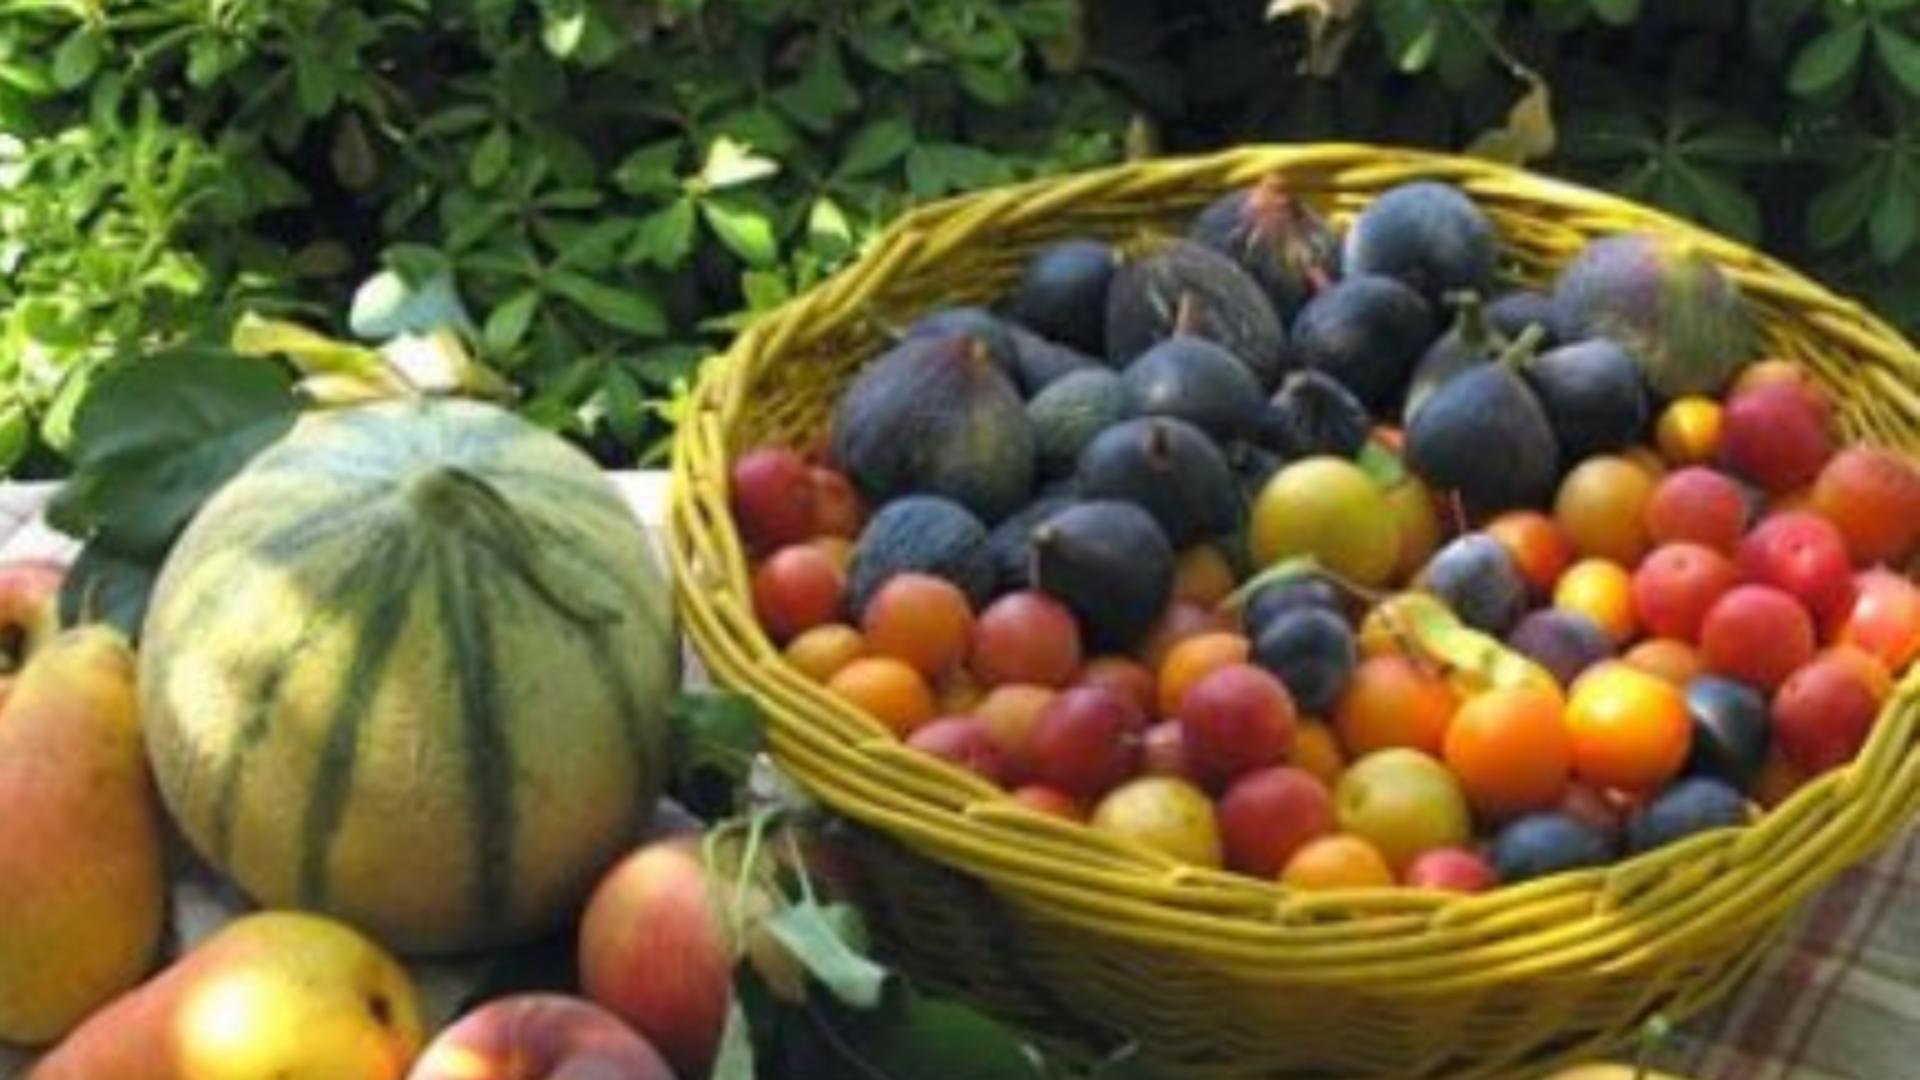 Cum pierzi kilogramele în plus cu 10 fructe şi legume de toamnă – Trebuie să renunți la 2 produse periculoase pentru sănătate